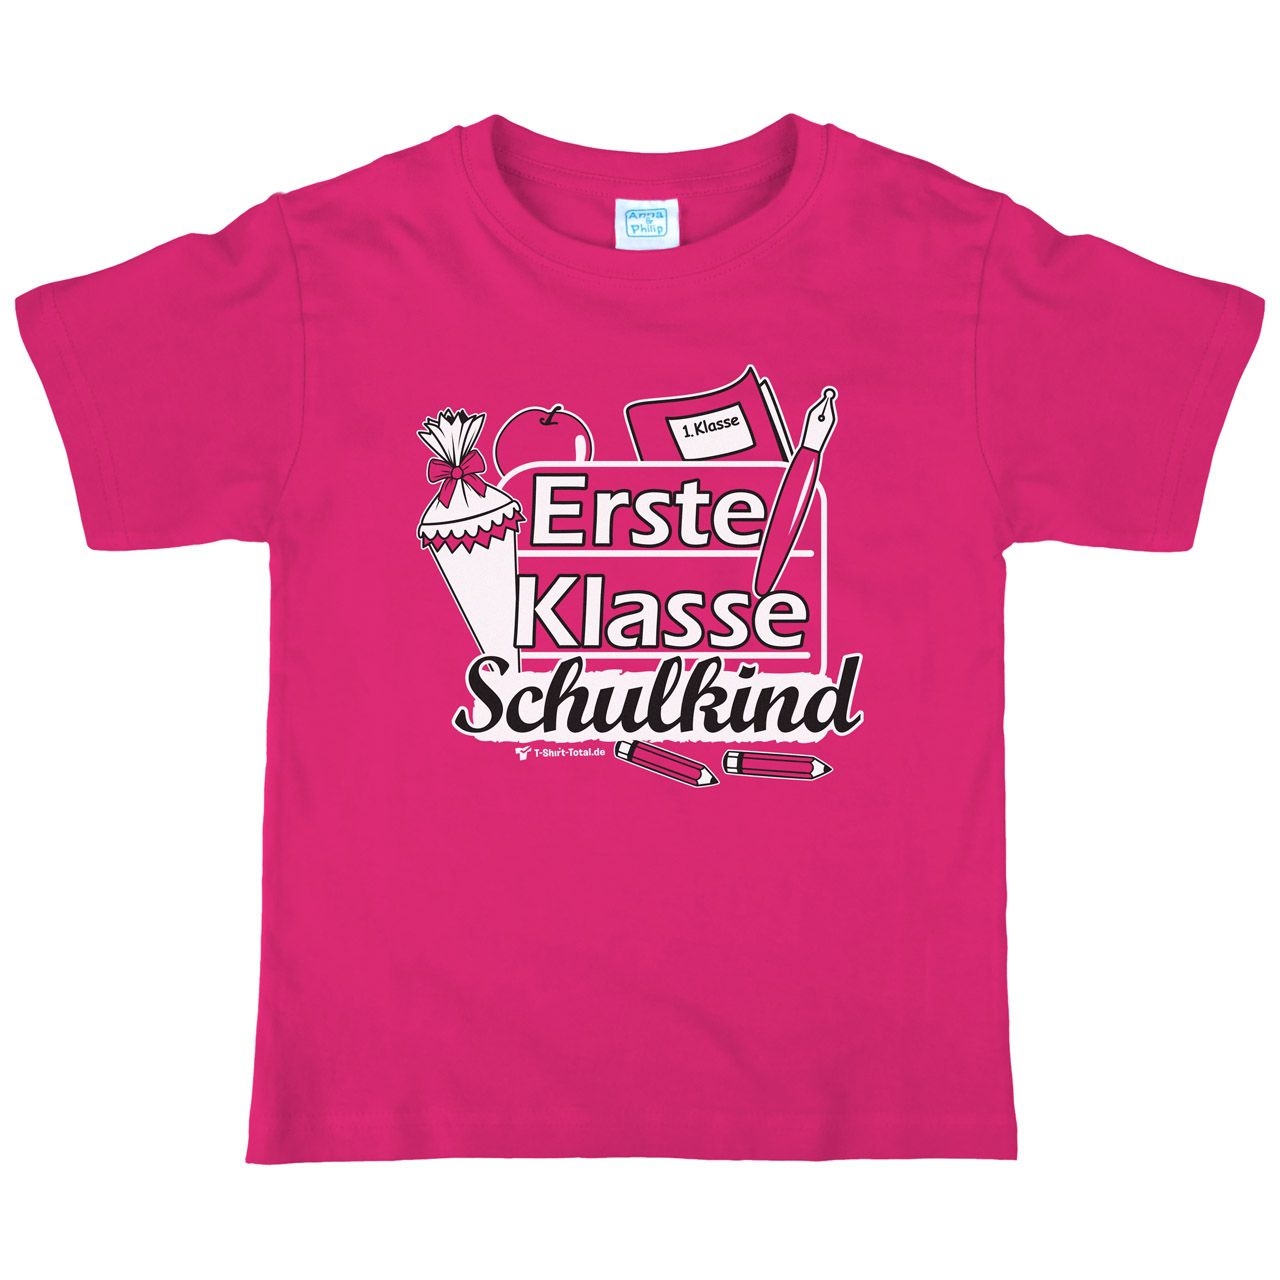 Erste Klasse Schulkind Kinder T-Shirt mit Namen pink 122 / 128